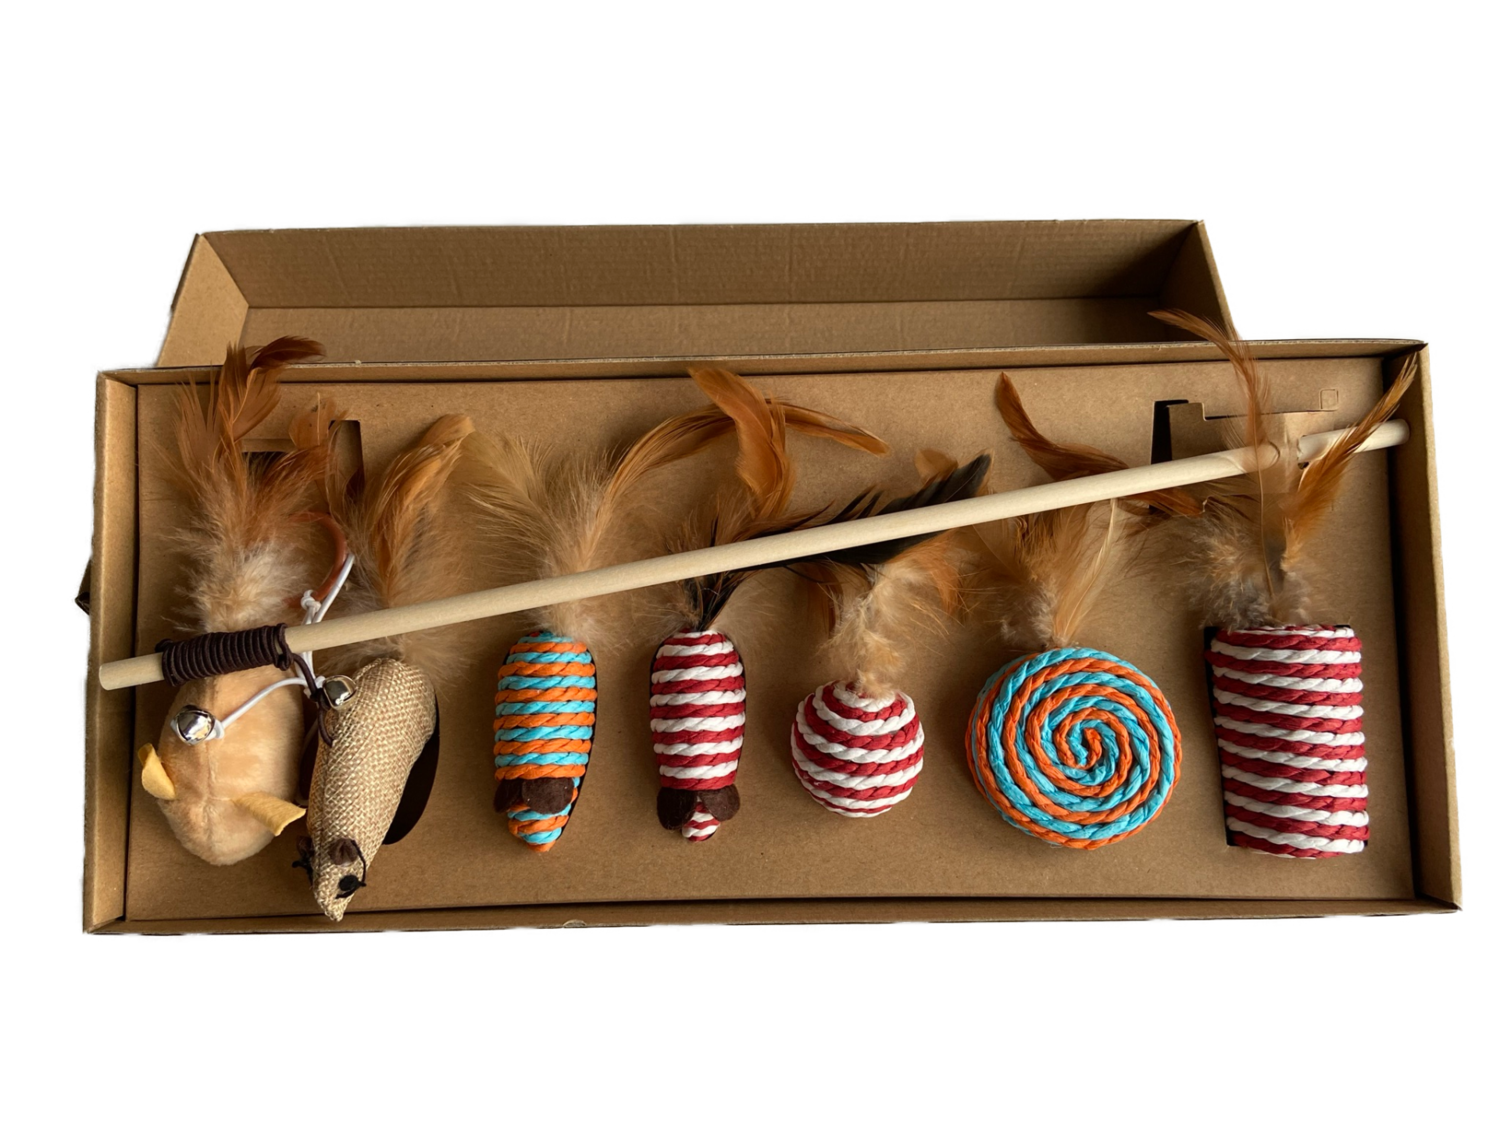 Luxe kattenspeeltjes in doos - Kattenhengel - 7 x kattenspeeltjes